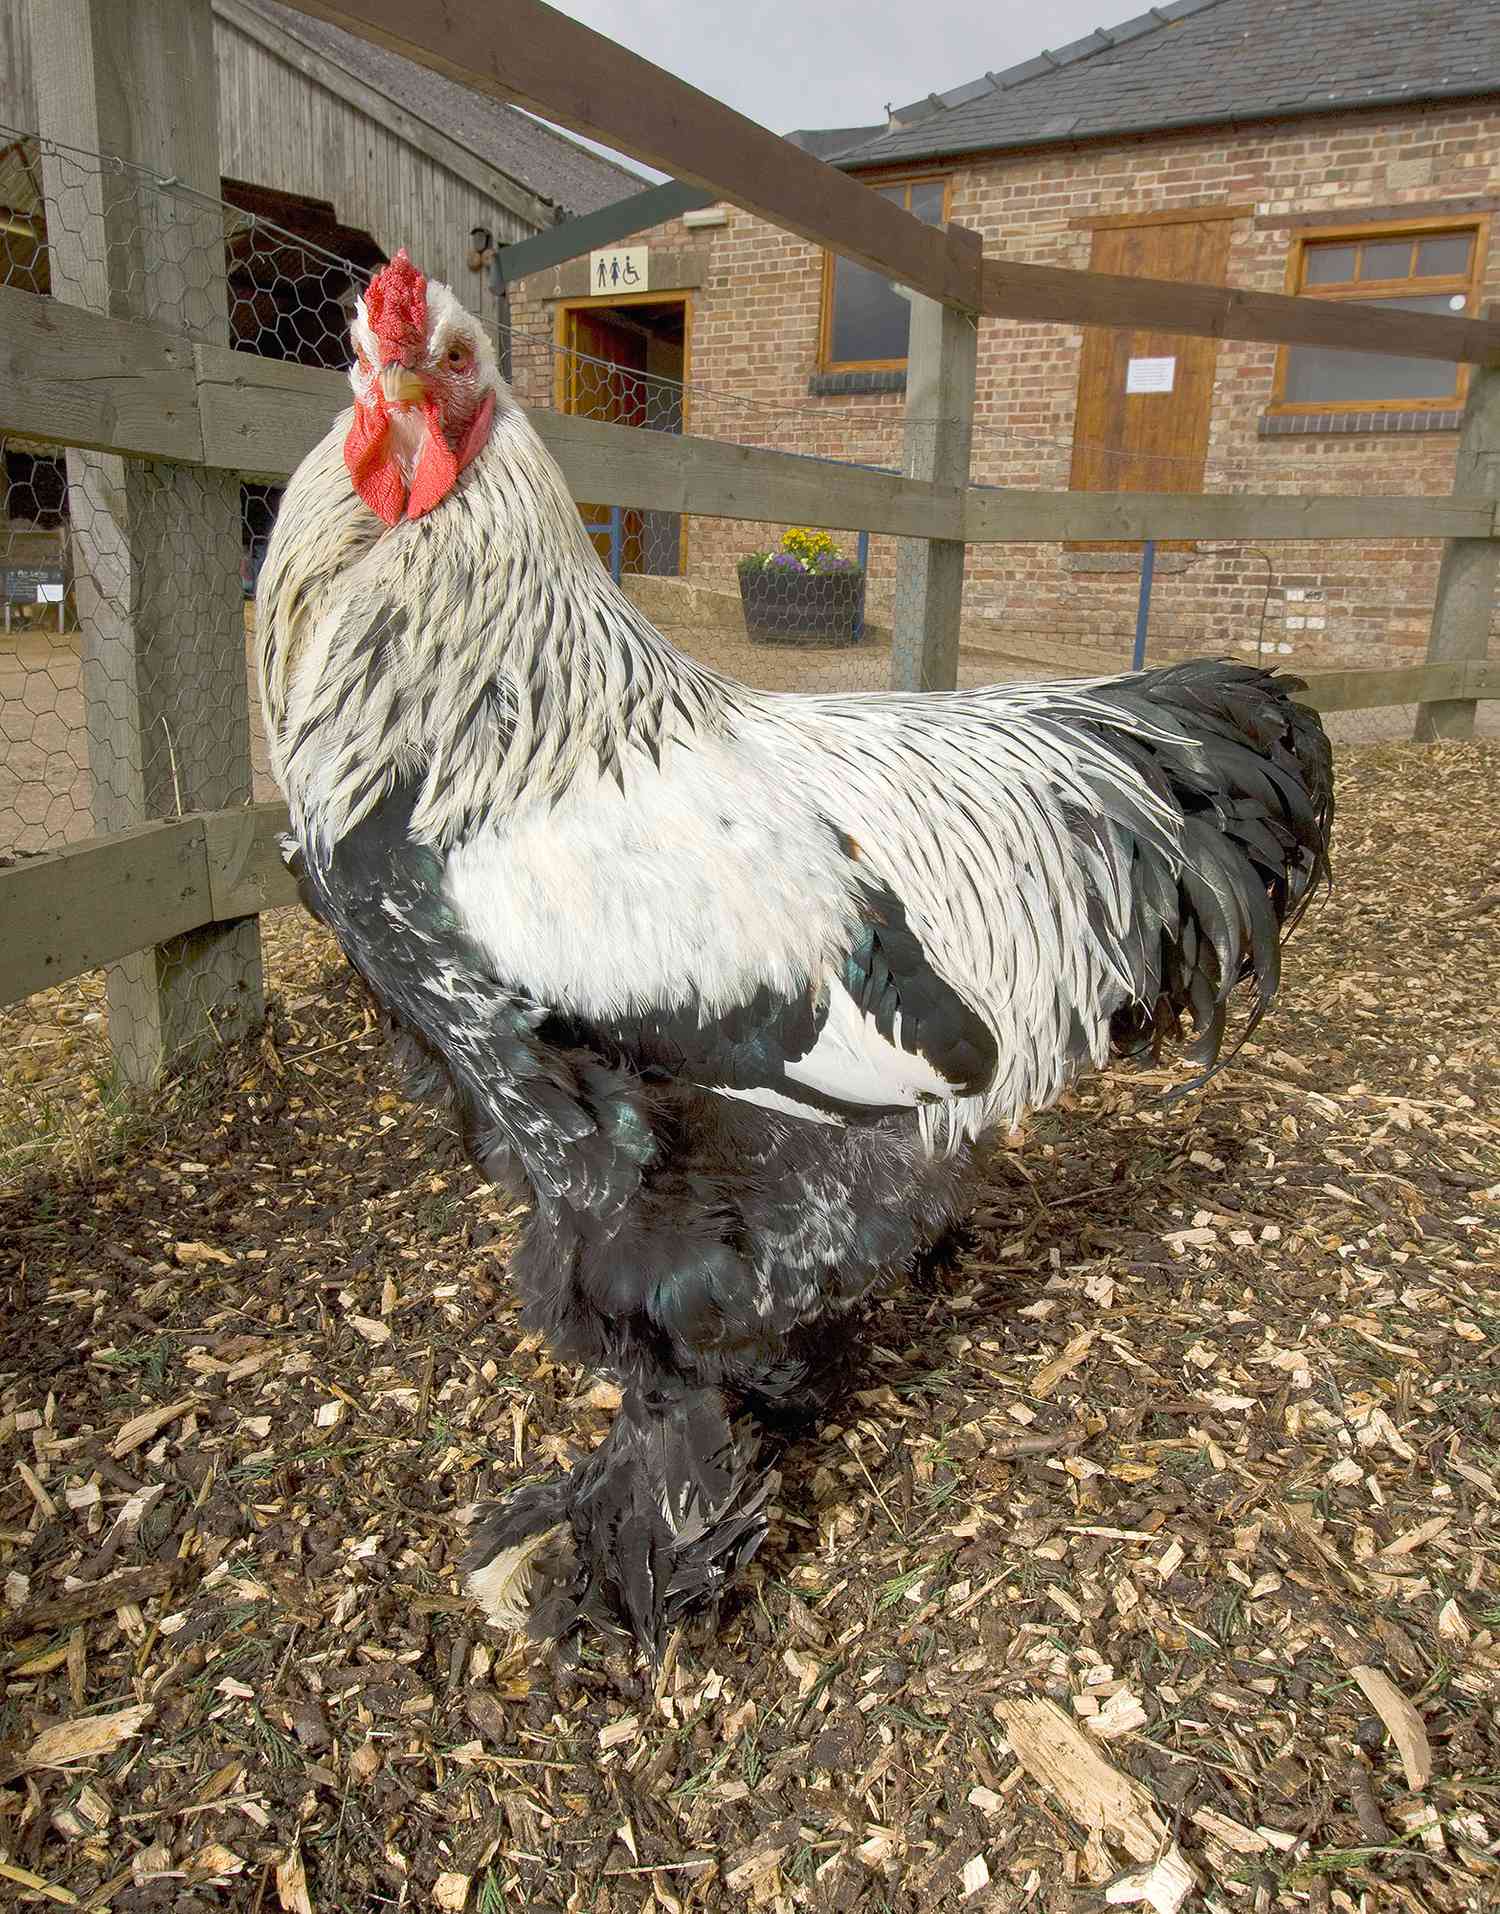 Dark Brahma rooster (Gallus gallus), Church farm, Suffolk, UK